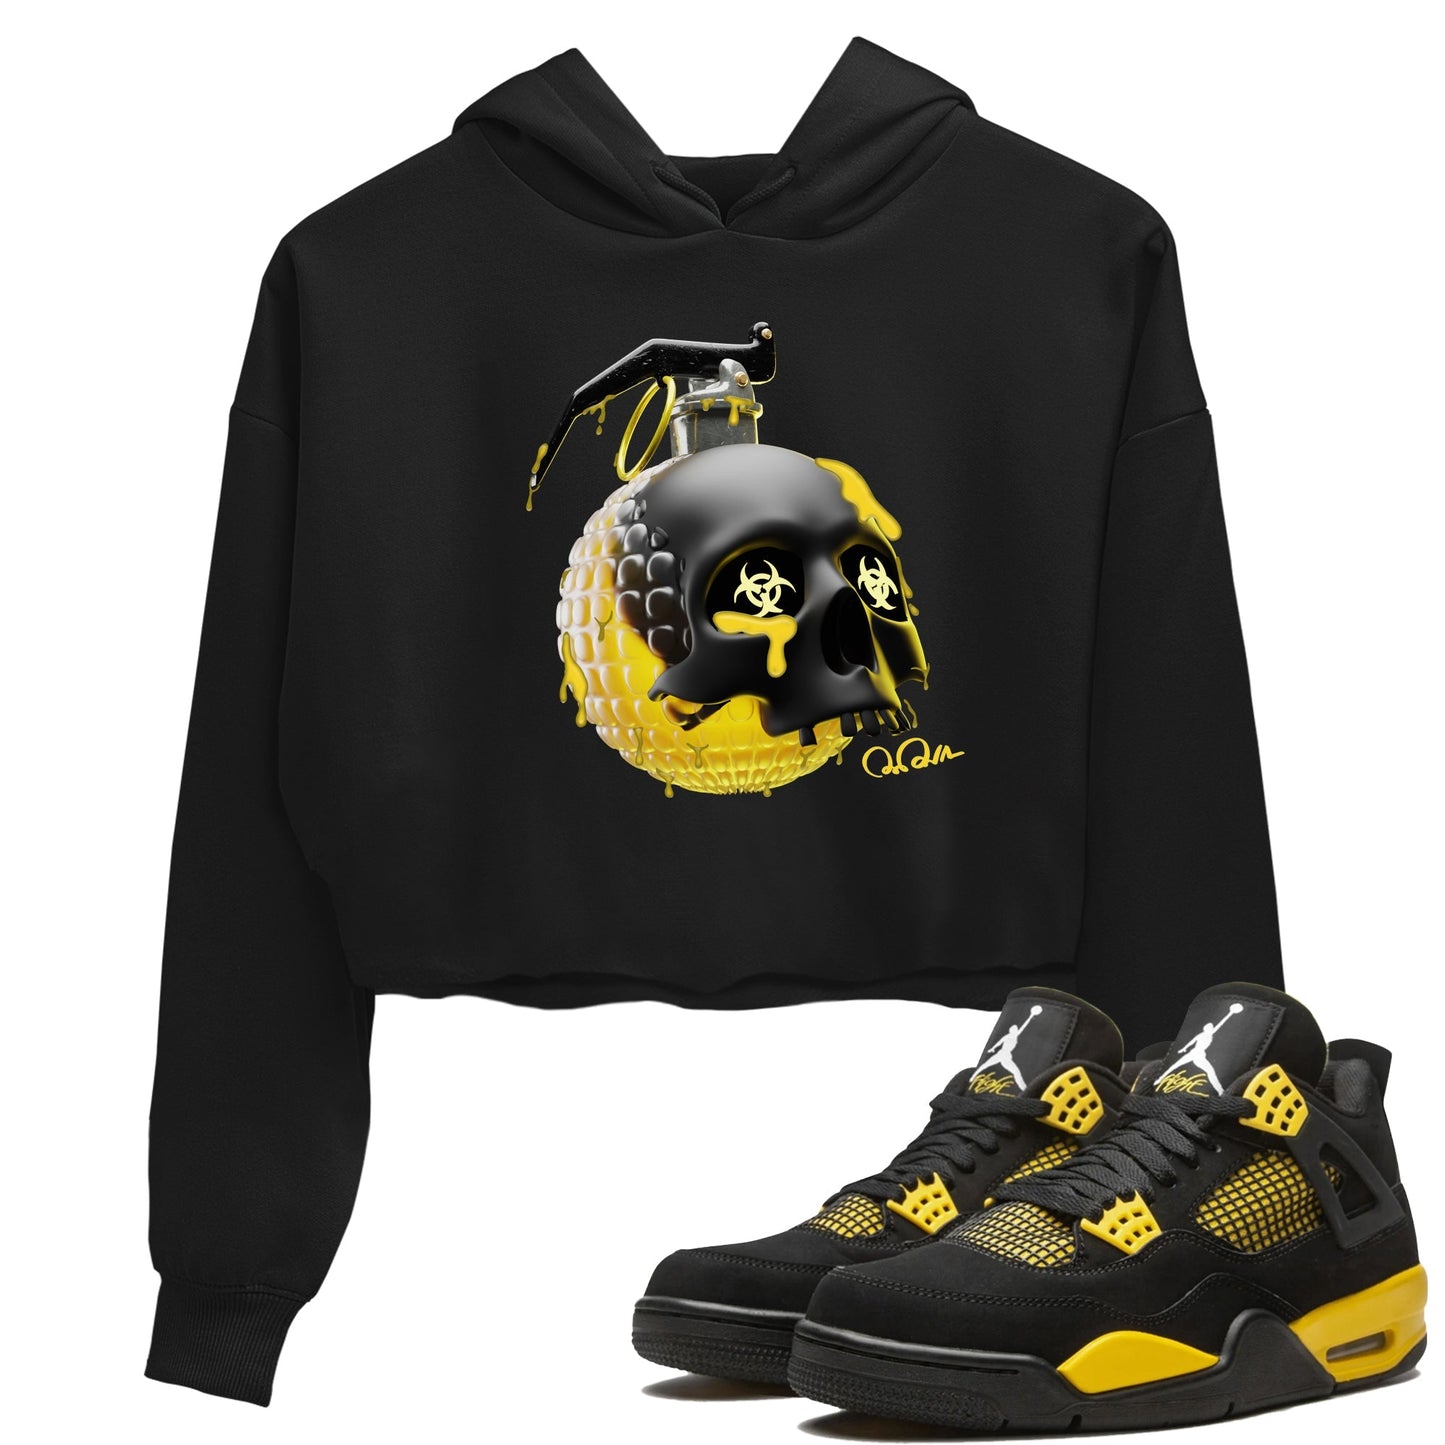 Air Jordan 4 Thunder Sneaker Tees Drip Gear Zone Skull Bomb Sneaker Tees AJ4 Thunder Jumpman Shirt Women's Shirts Black 1